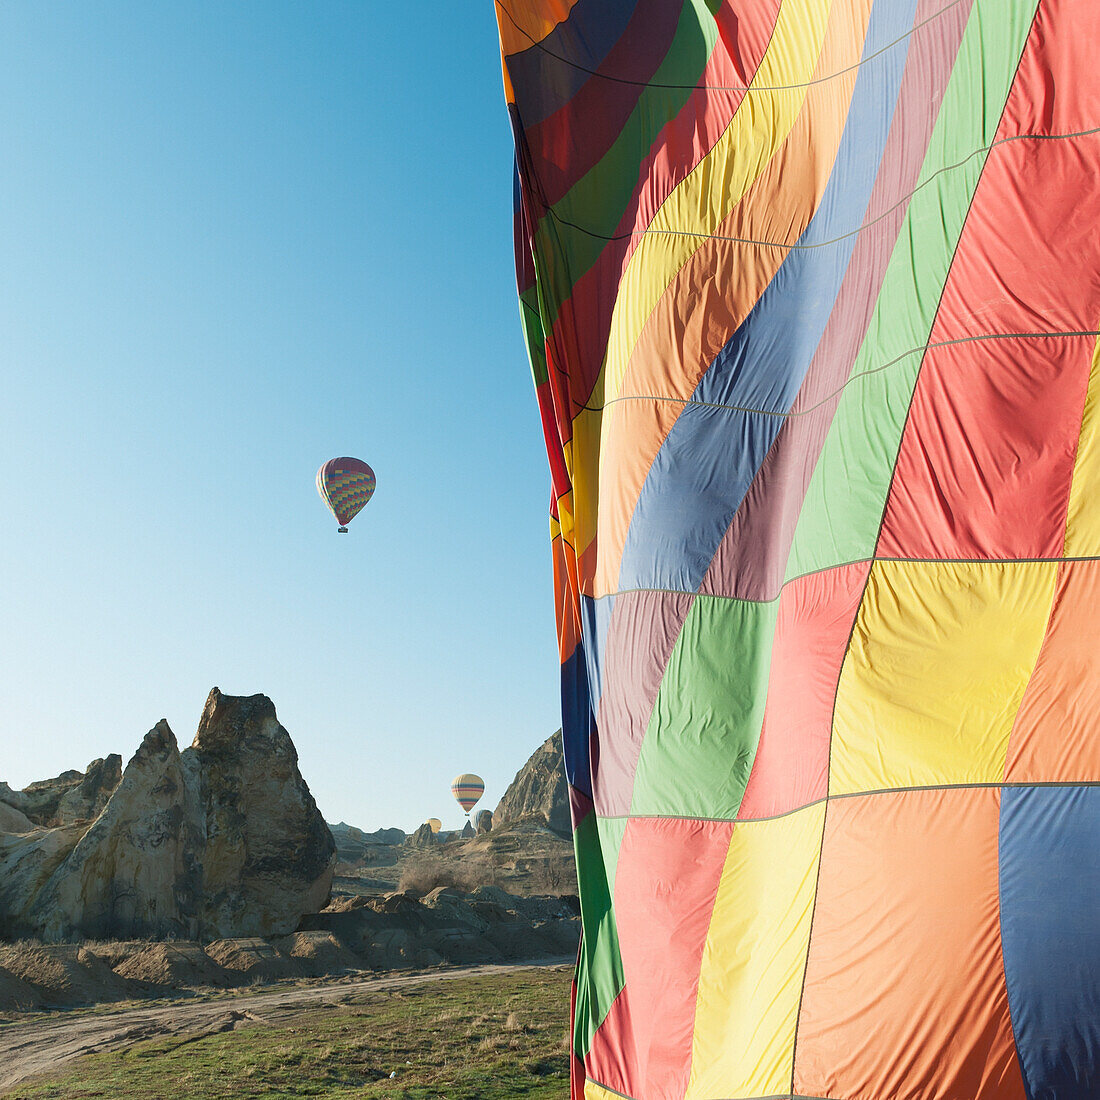 Bunte Heißluftballons in der Luft; Goreme Nevsehir Türkei